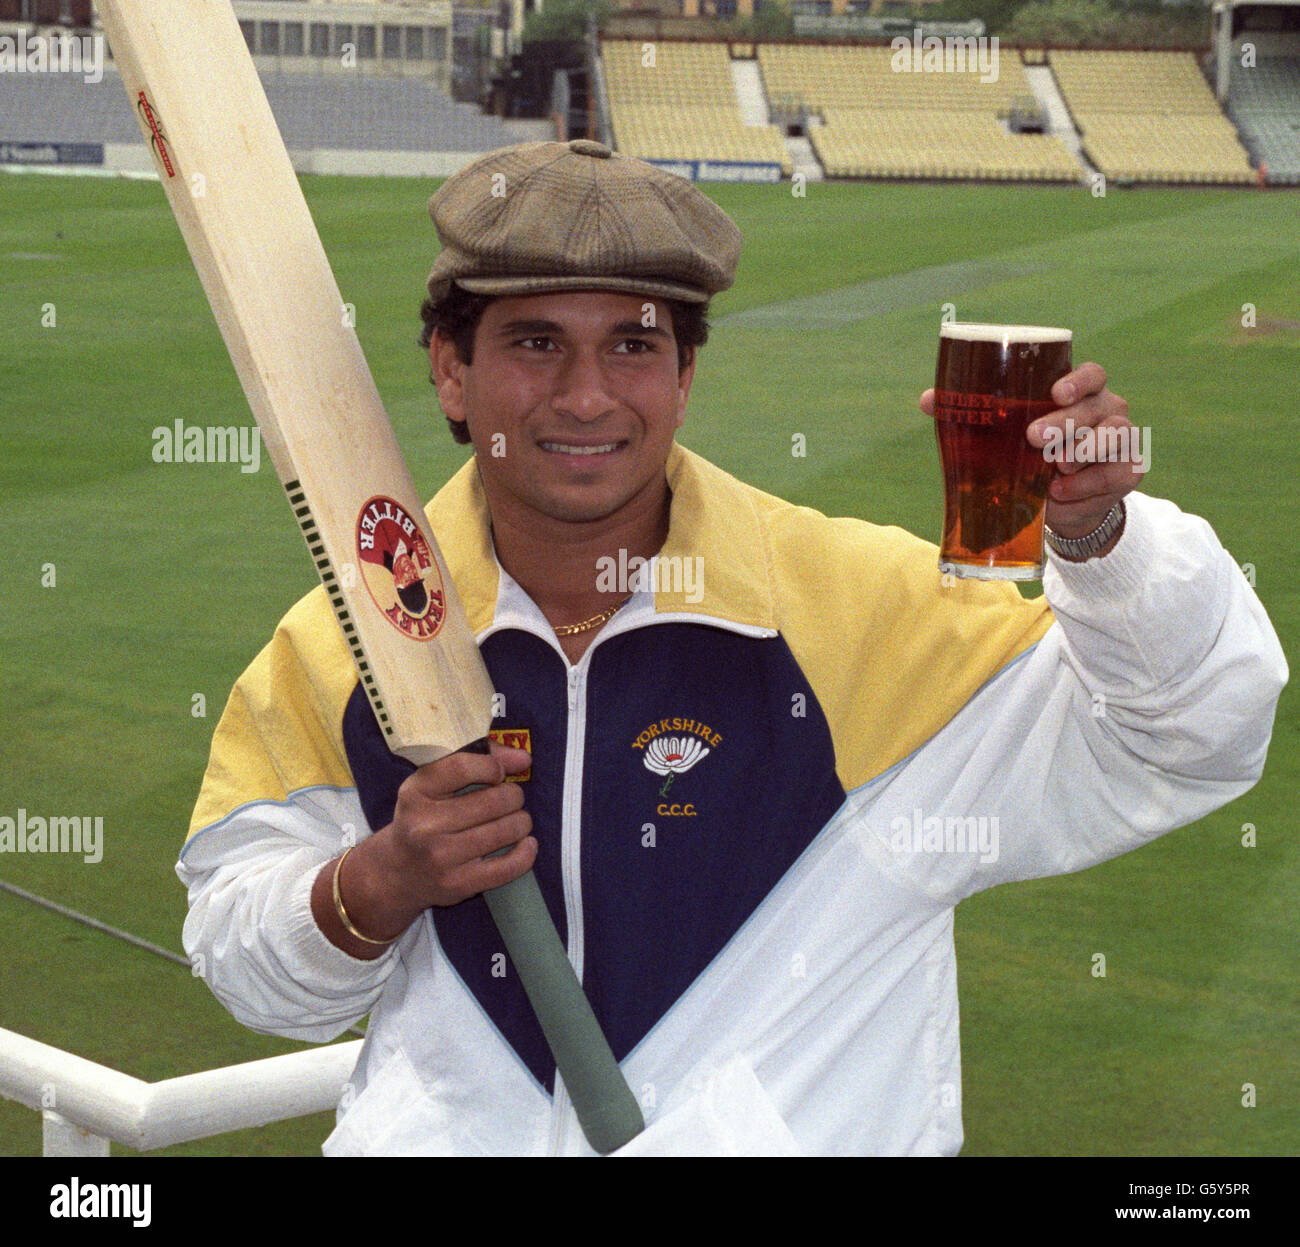 Der indische Kricketspieler Sachin Tendulkar mit einem Pint und einer Stoffkappe im Oval wurde als erster nicht-Yorkshireman ausgewählt, der für den Yorkshire County Cricket Club spielte. Stockfoto